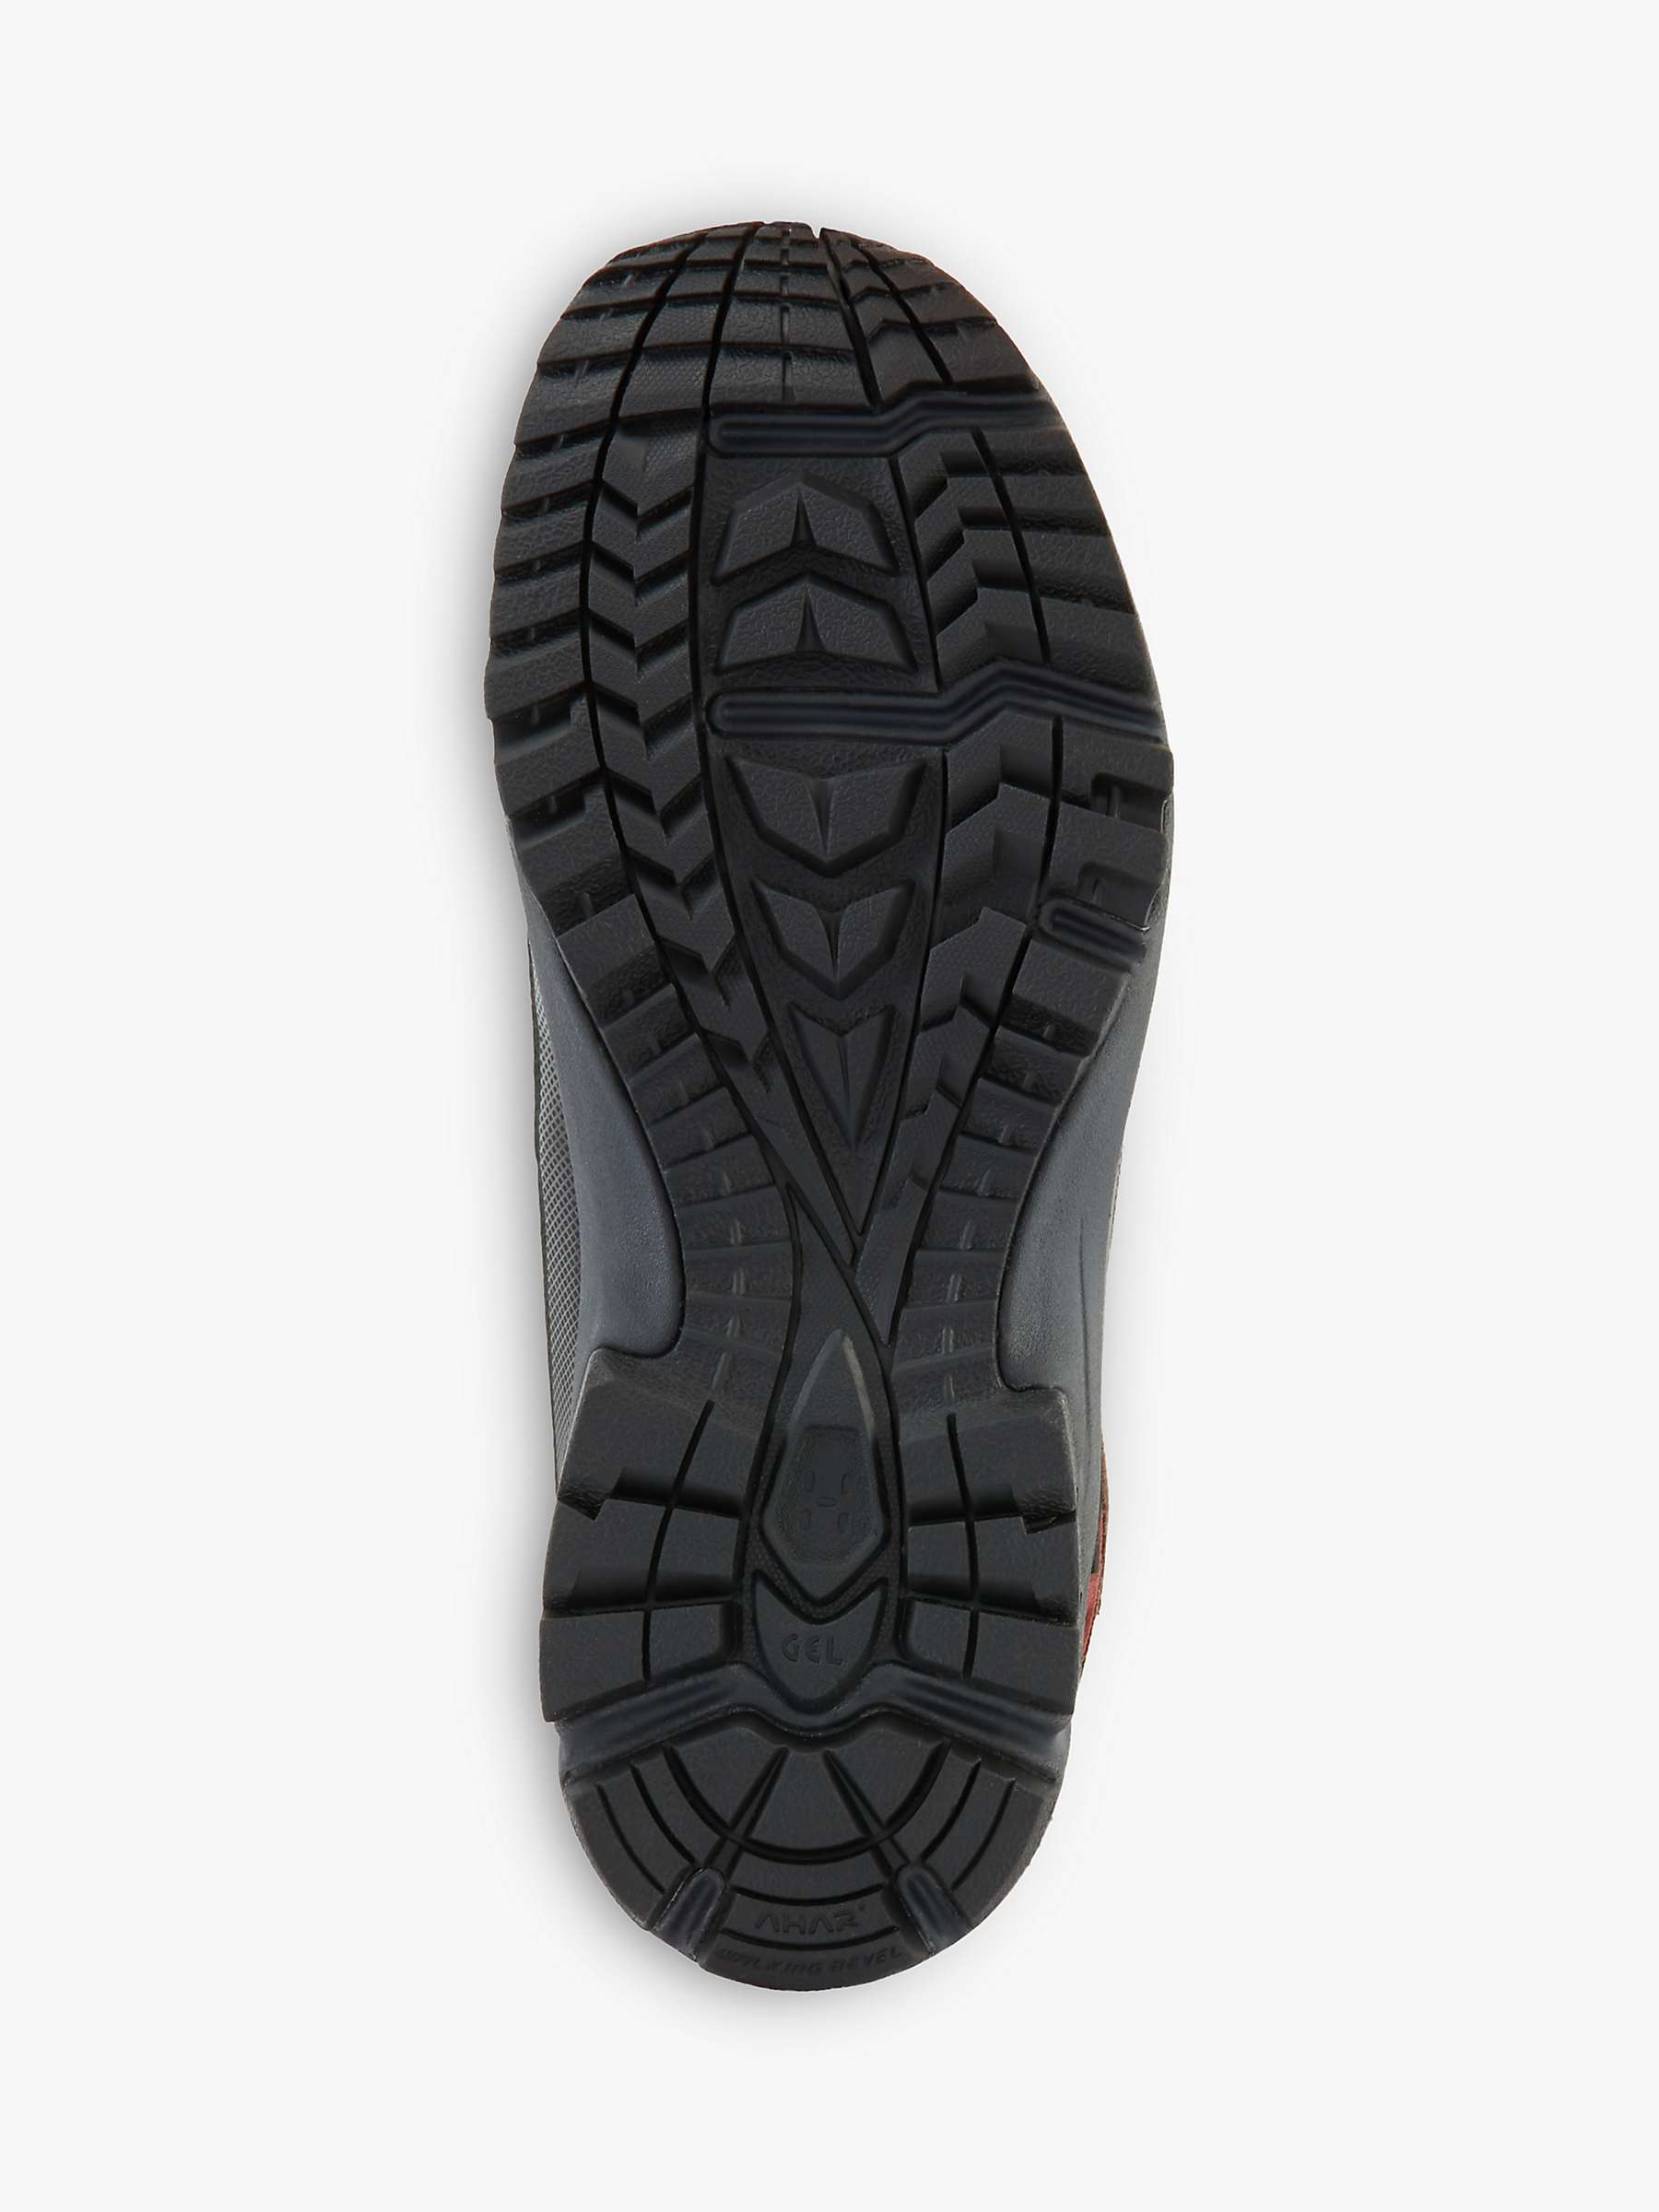 Buy Haglöfs Skuta Mid Proof Eco Women's Walking Boots Online at johnlewis.com